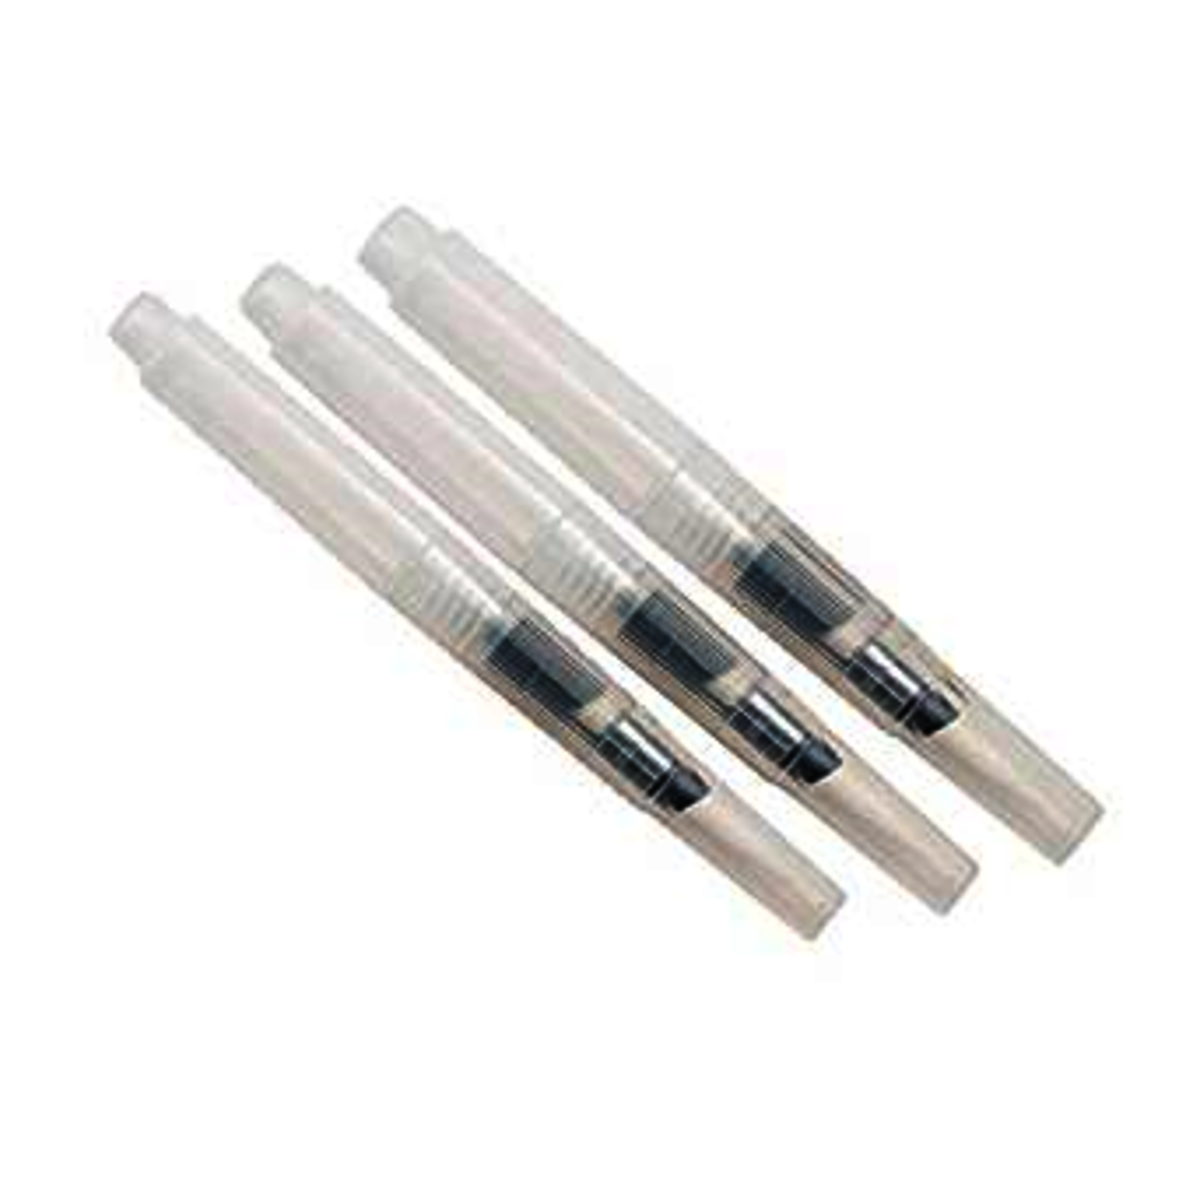 Water Brush Pens (Pack of 6)